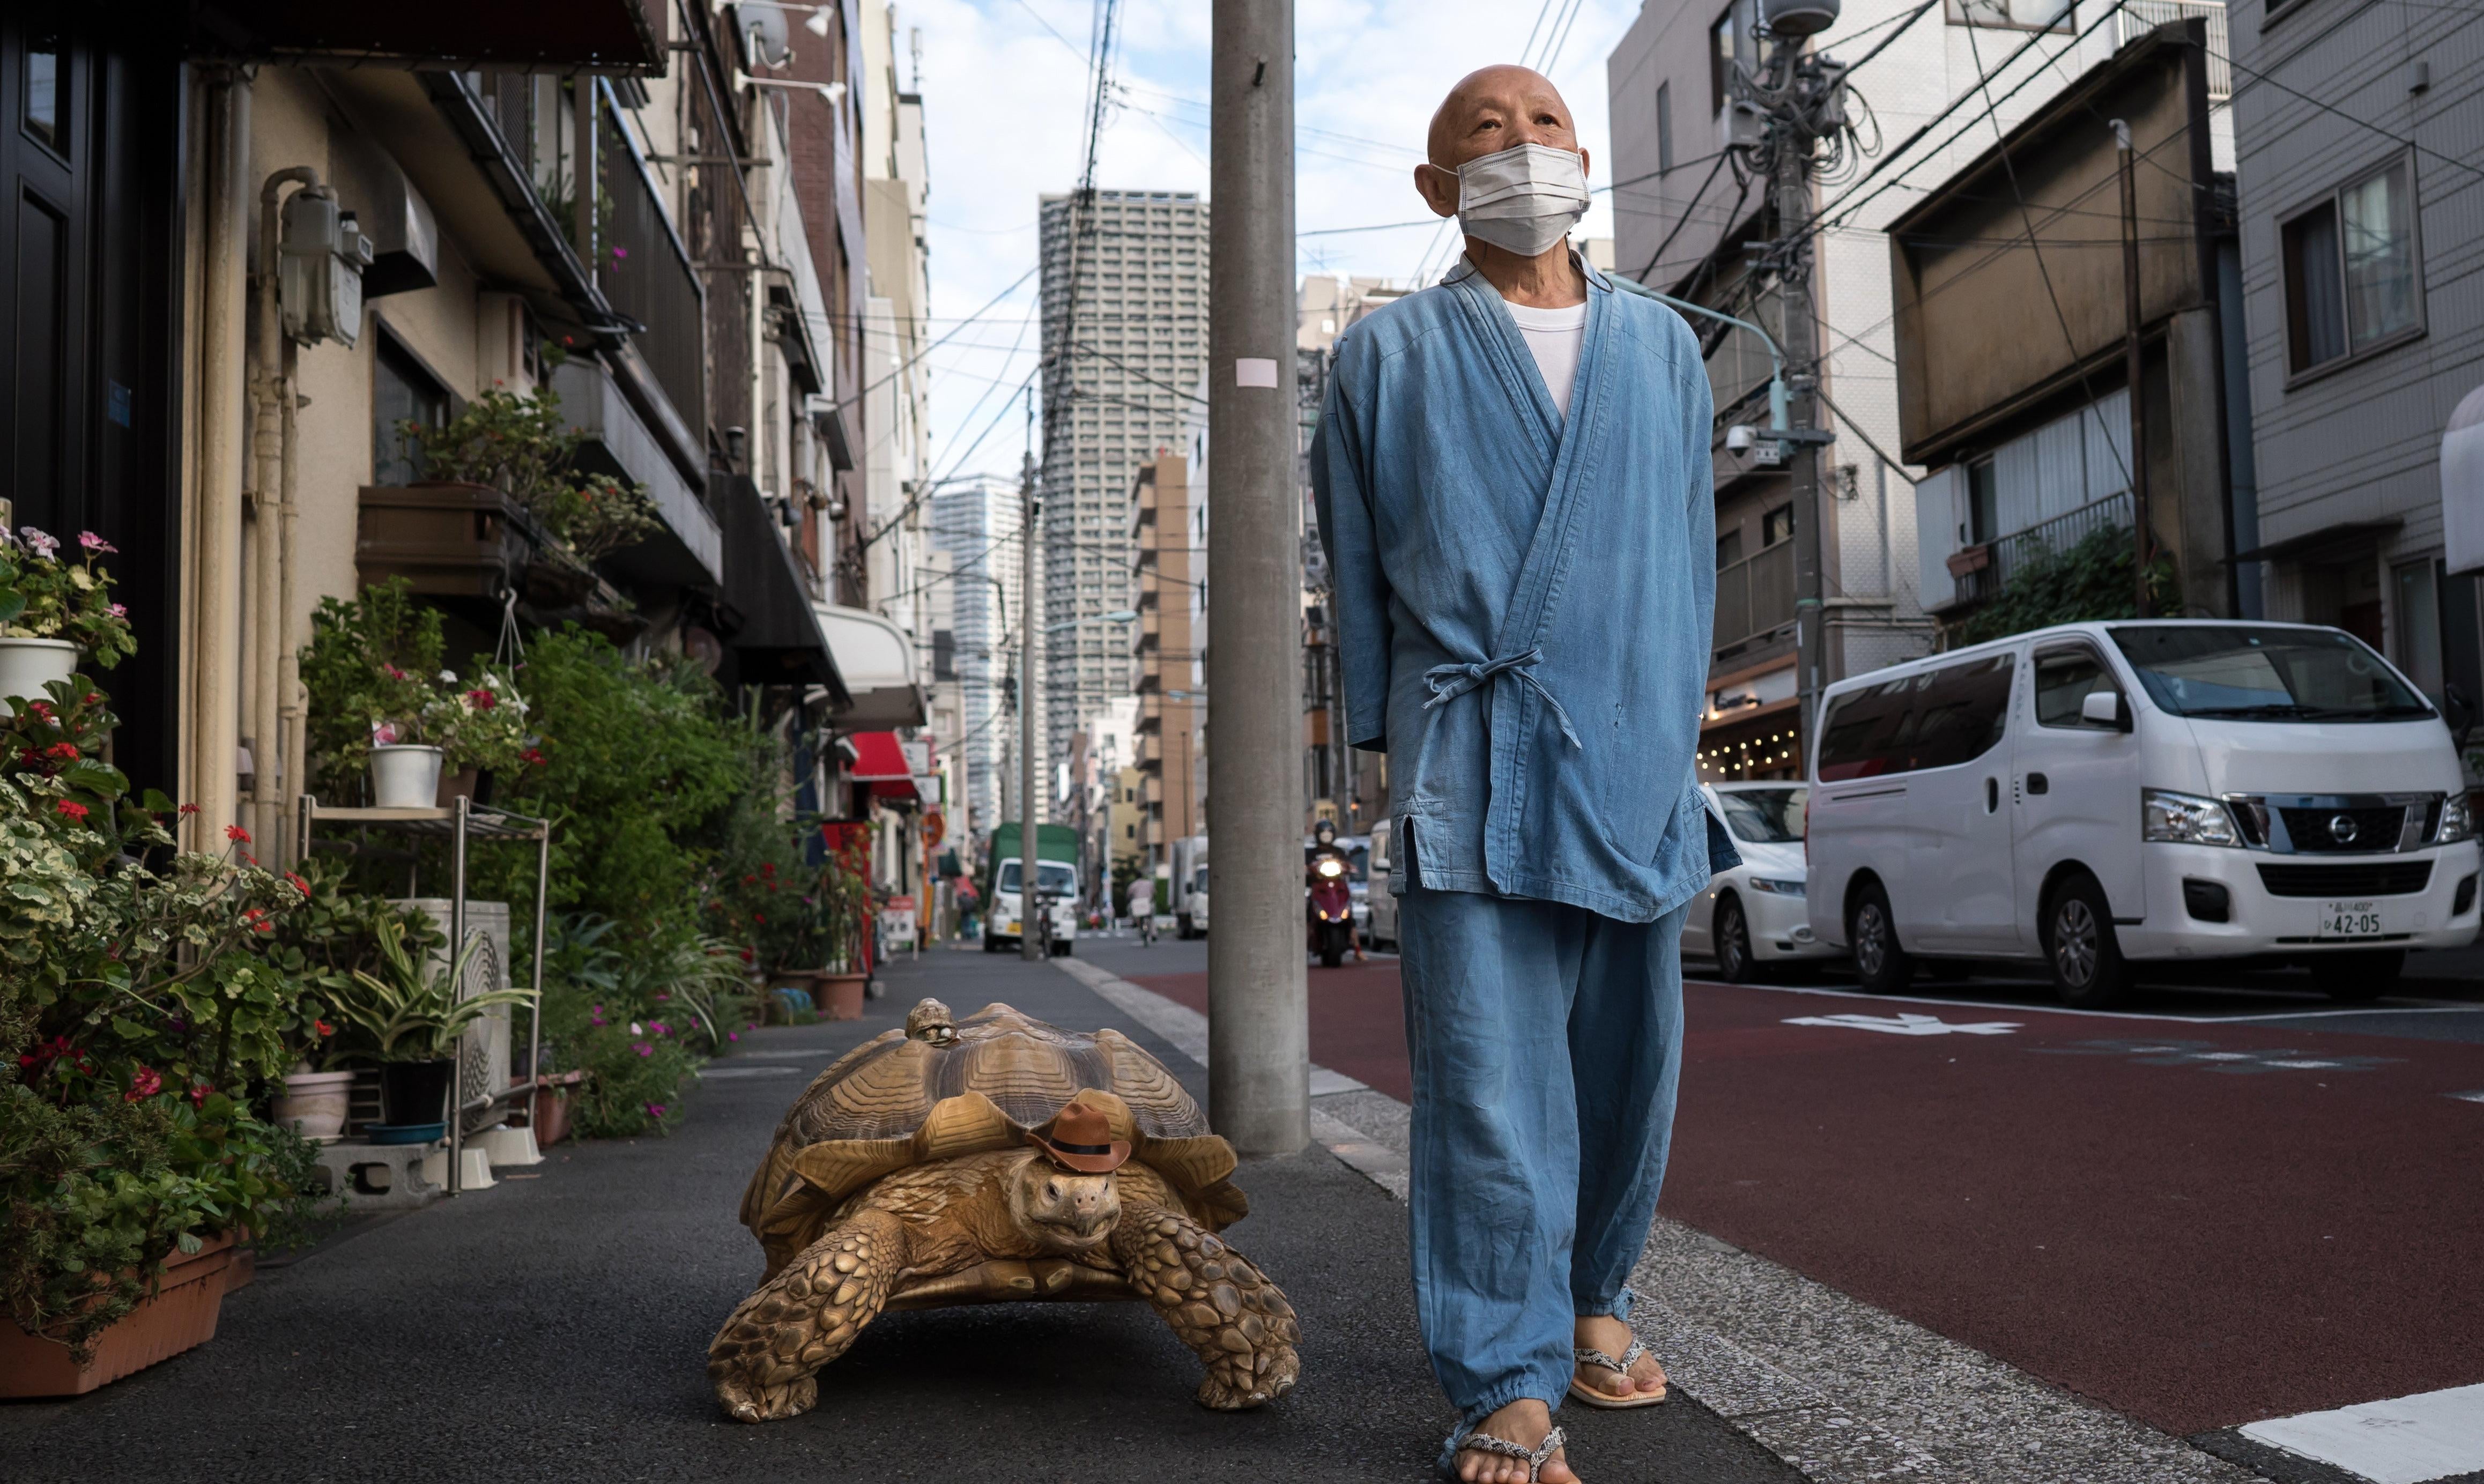 Photo: Tomohiro Ohsumi, Getty Images